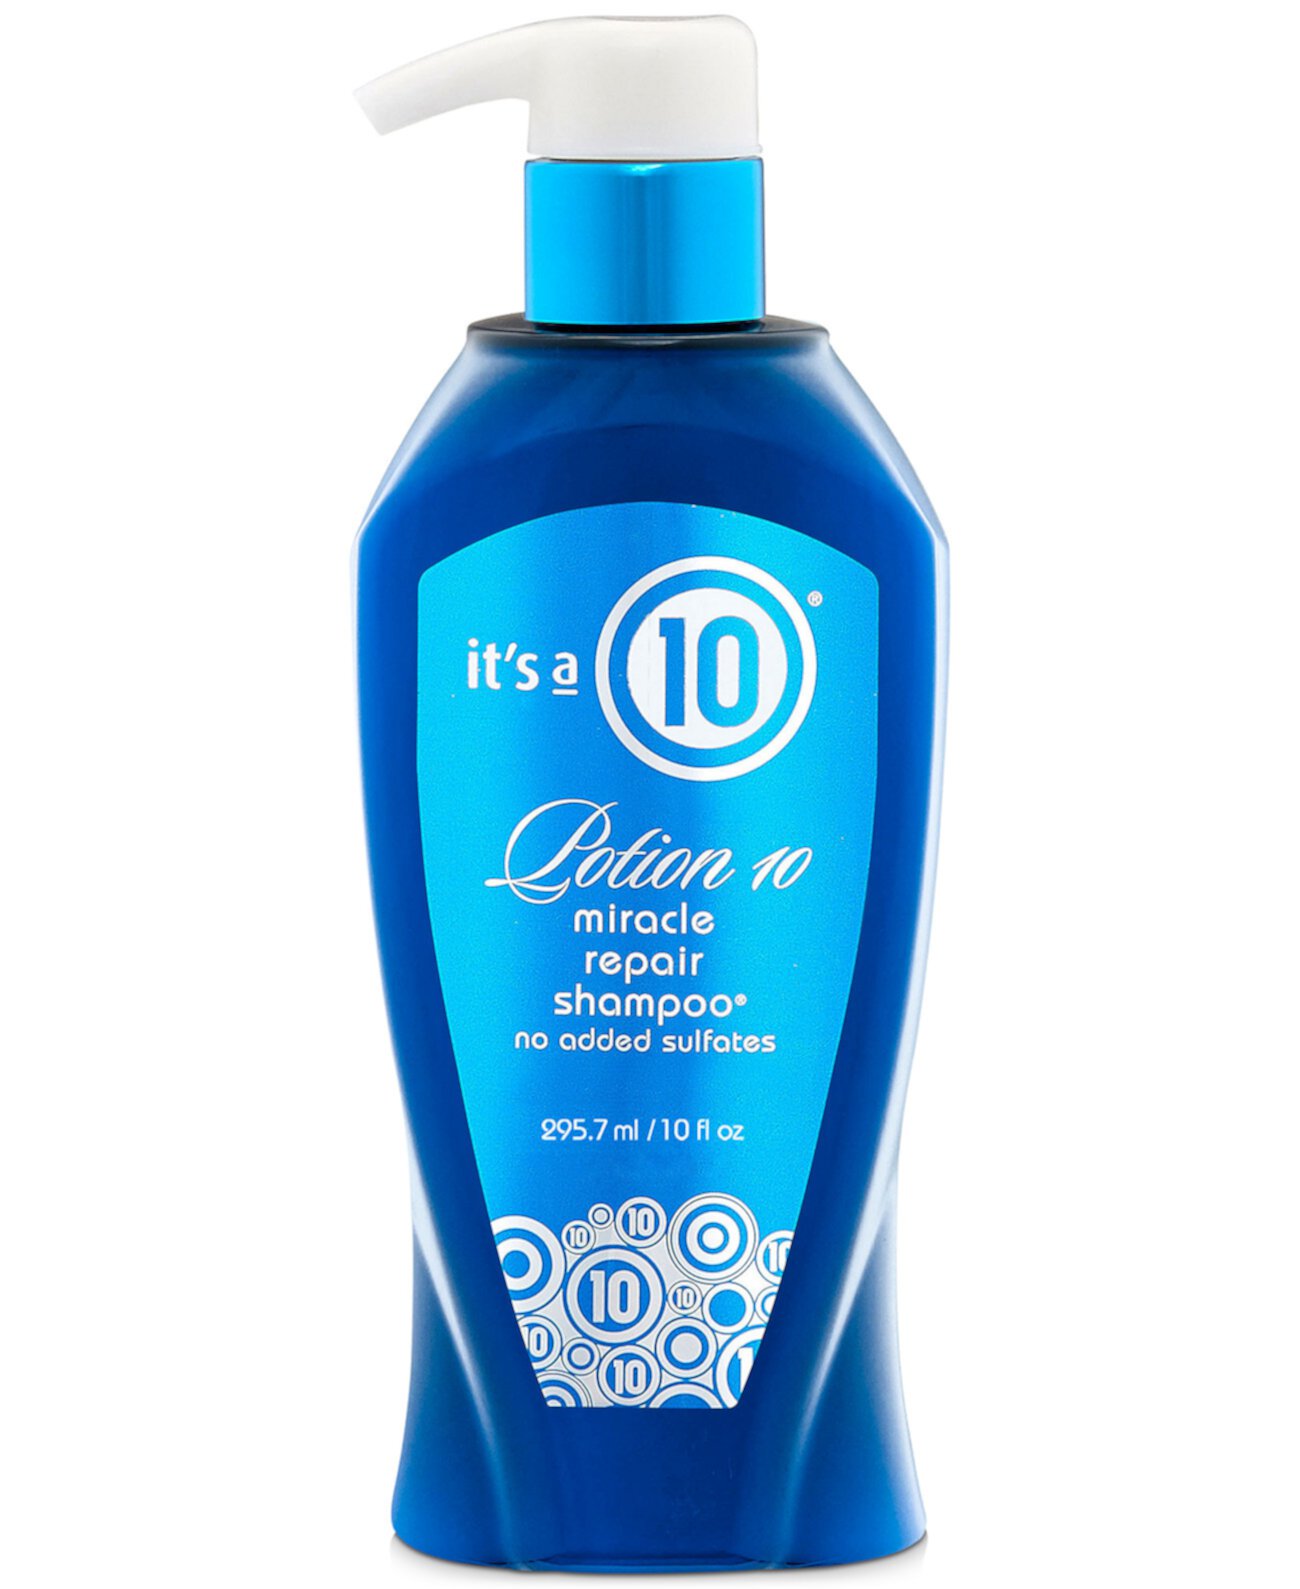 Potion 10 Miracle Repair Shampoo, 10 унций, от PUREBEAUTY Salon & Spa ITS A 10